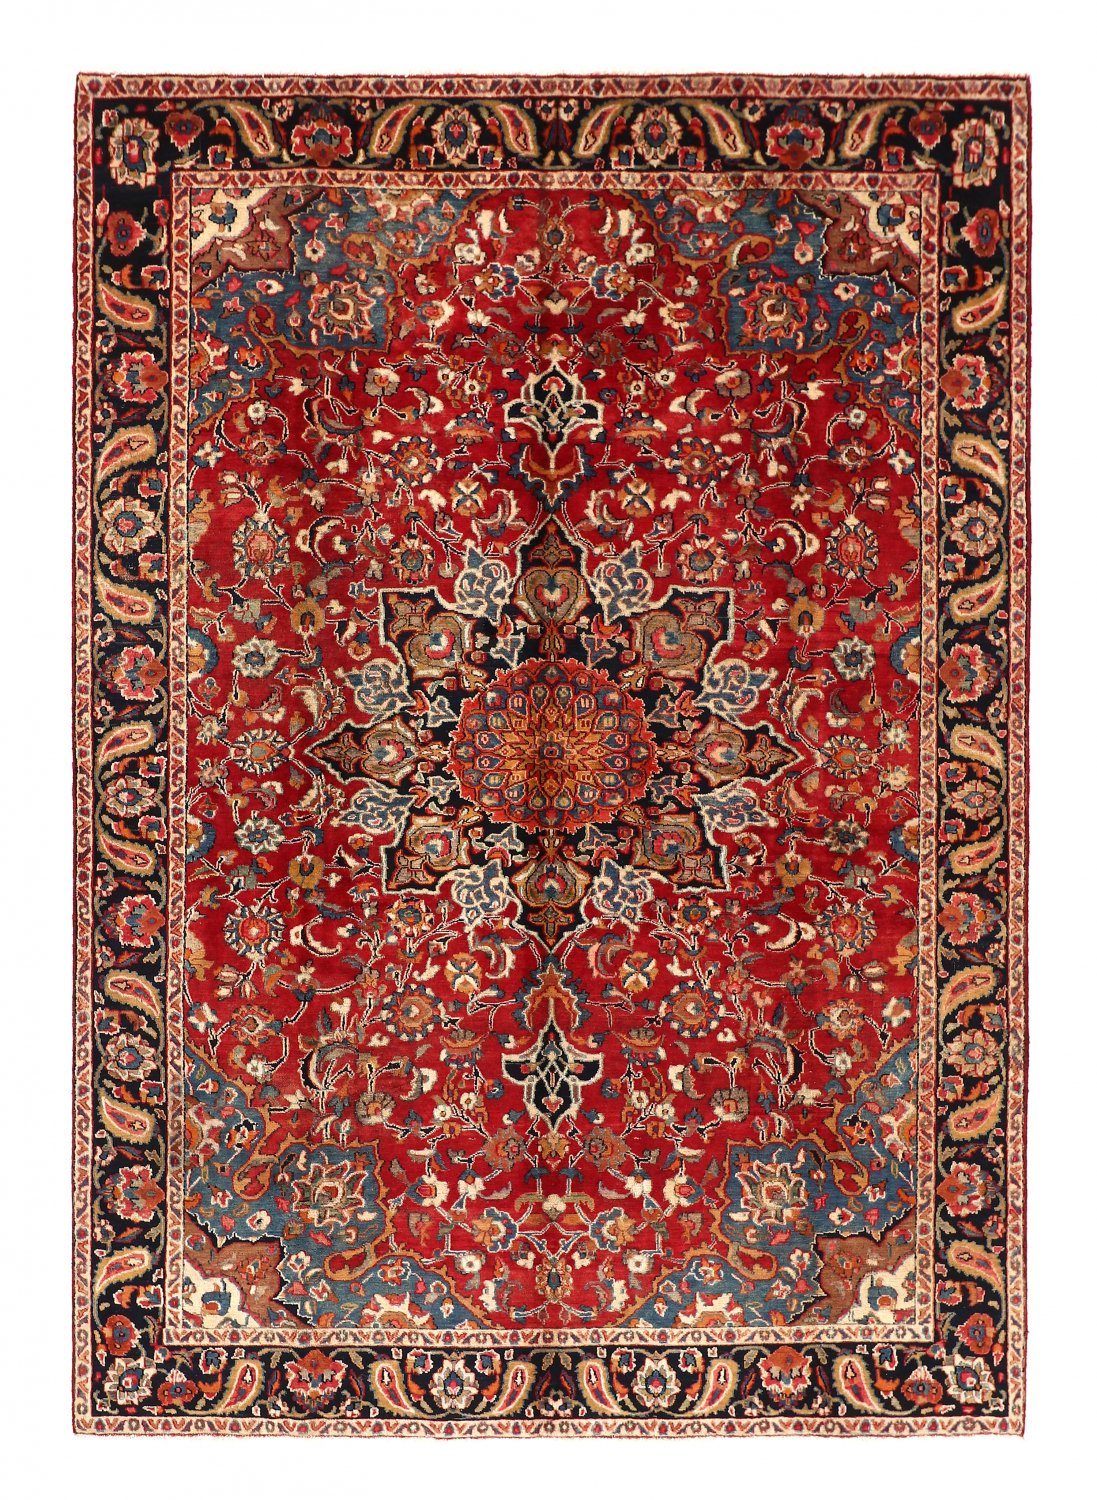 Persian rug Hamedan 294 x 205 cm